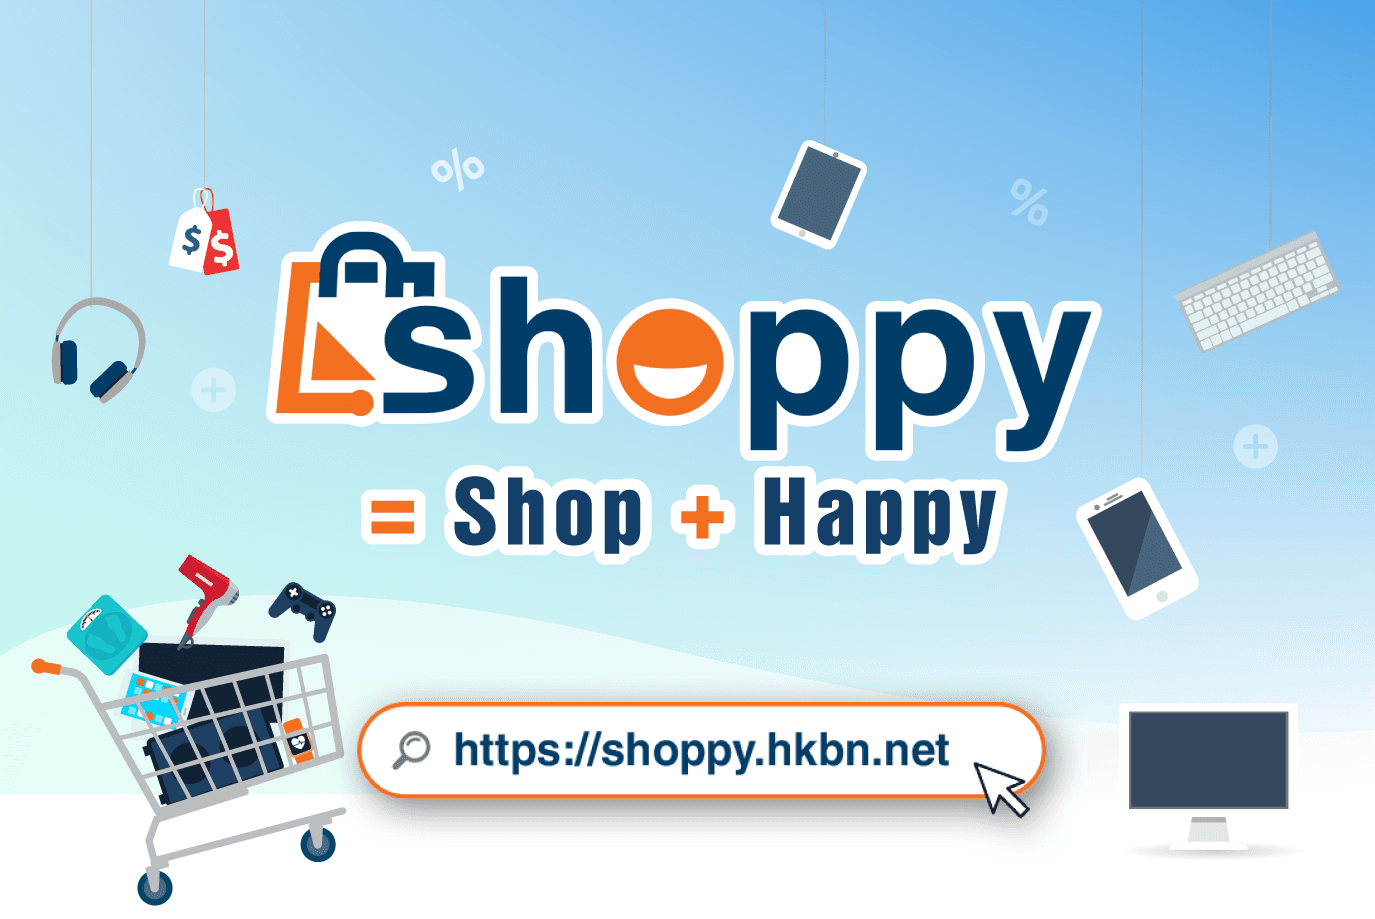 香港寬頻電子產品購物網站 Shoppy 隆重登場